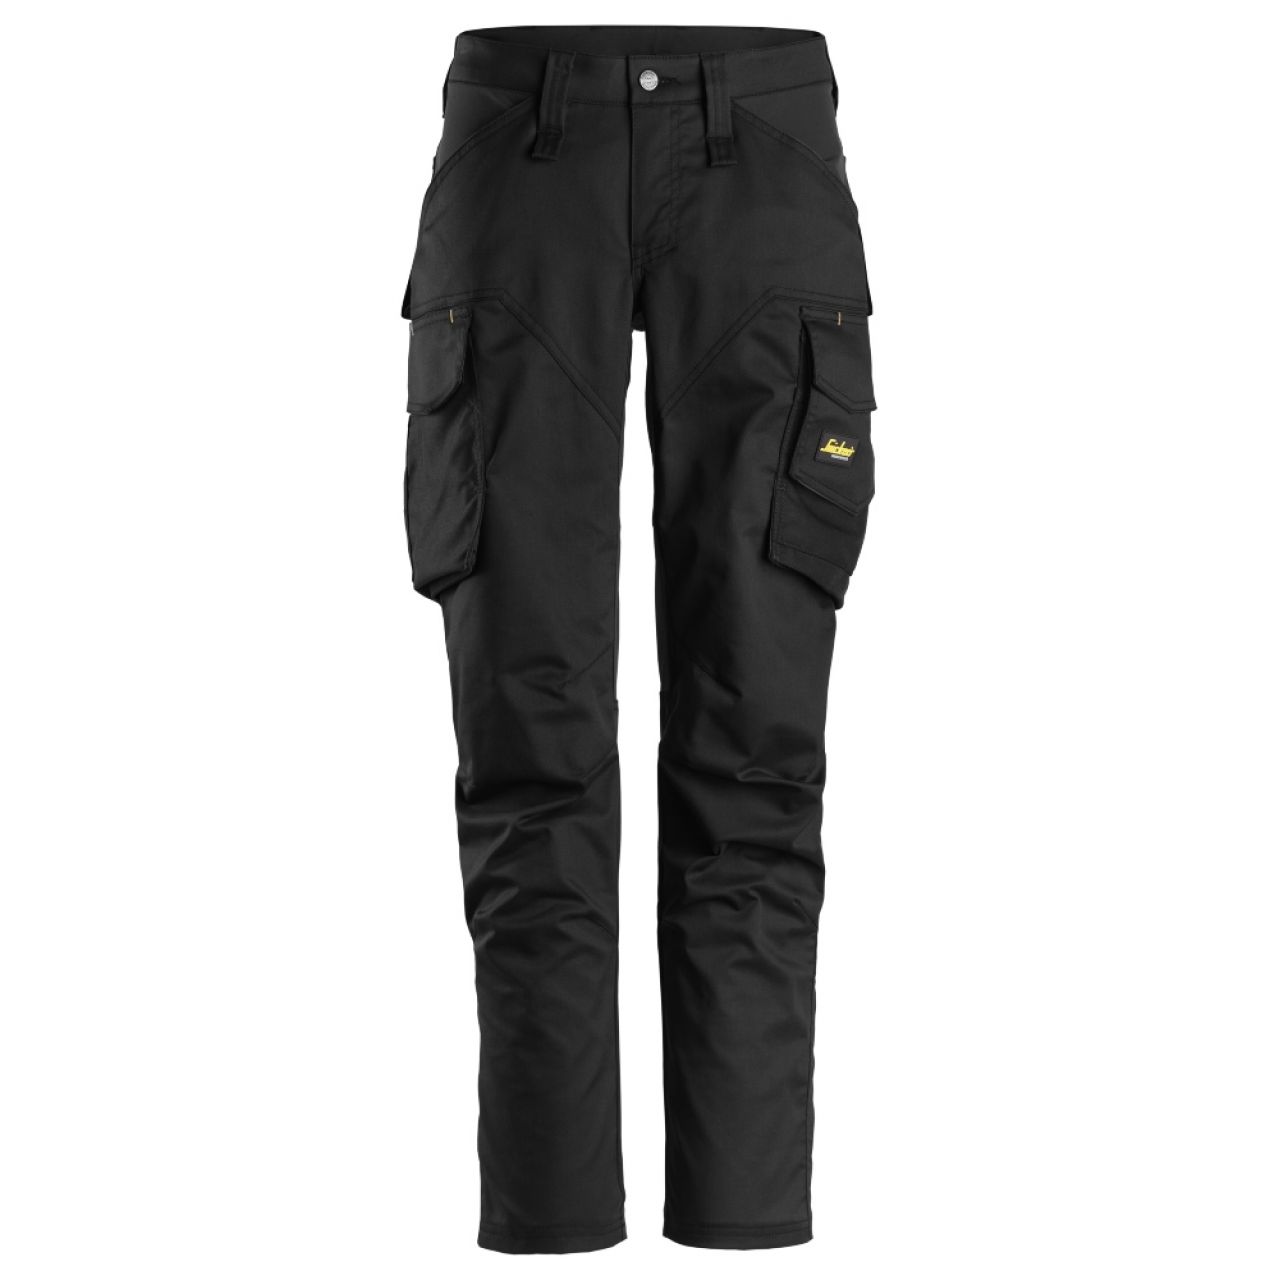 6703 Pantalones largos de trabajo elásticos para mujer con bolsillos para rodilleras AllroundWork negro talla 42